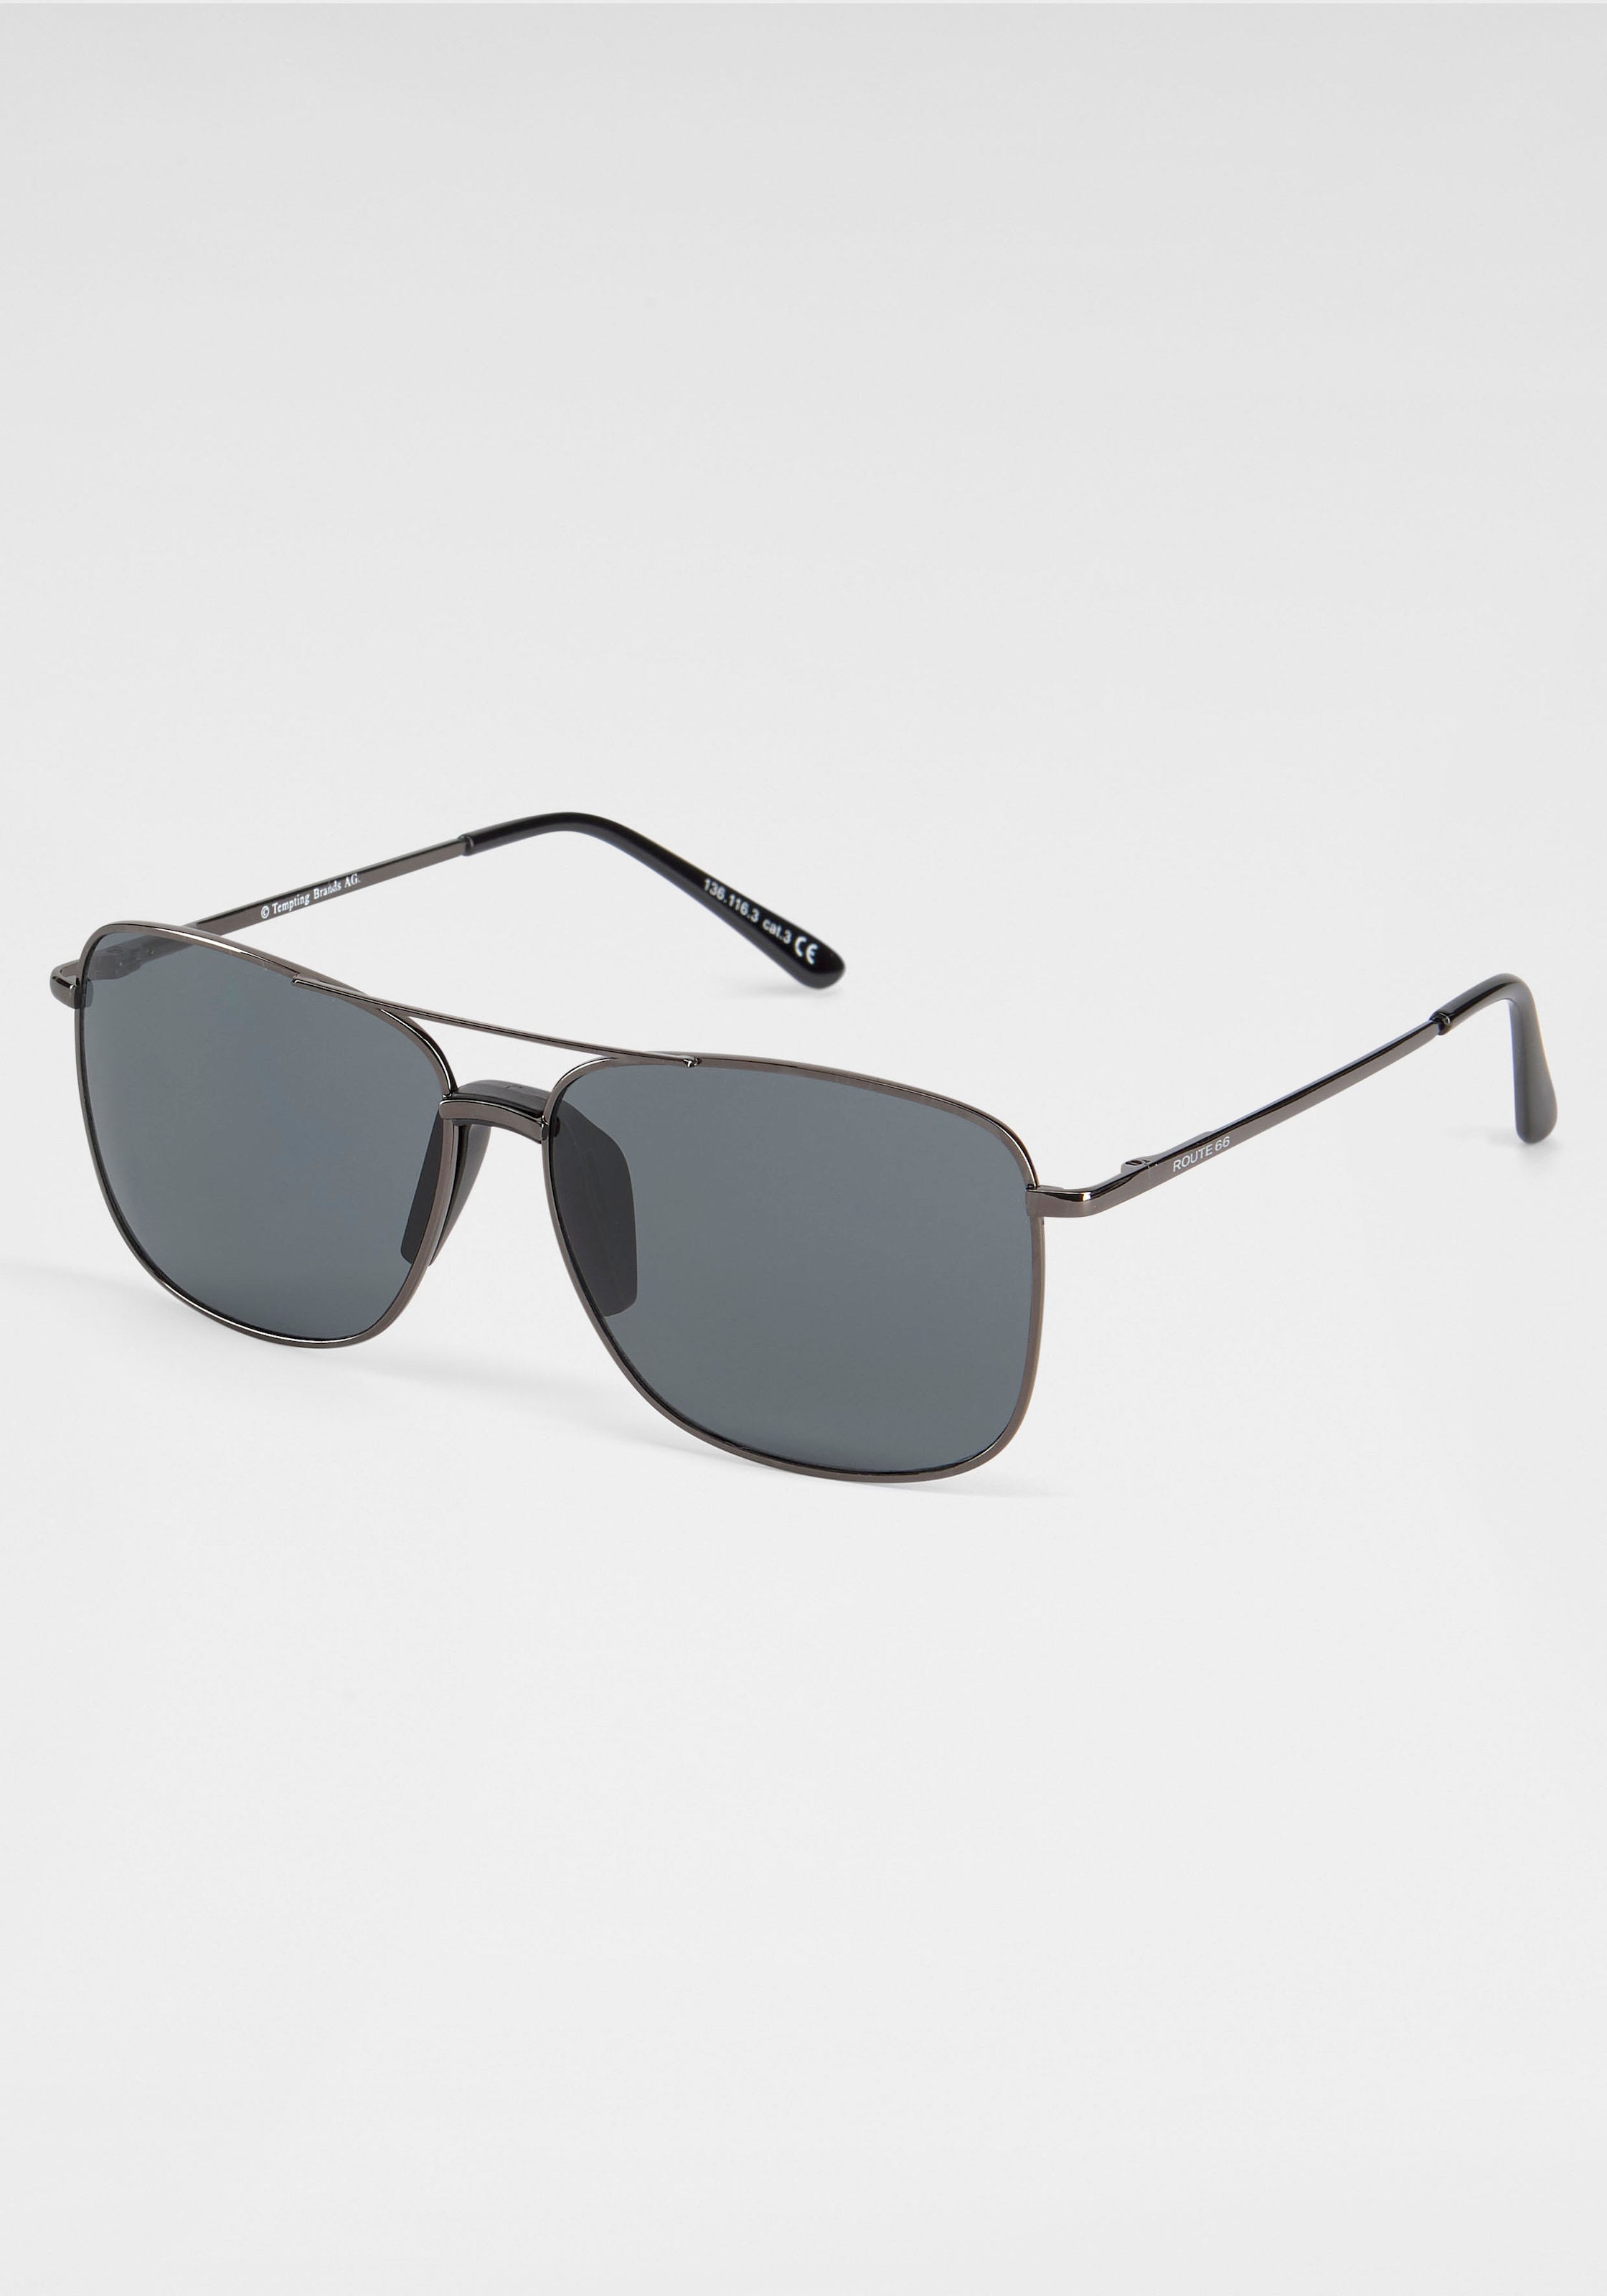 Bench. Sonnenbrille, mit verspiegelten kaufen online Gläsern